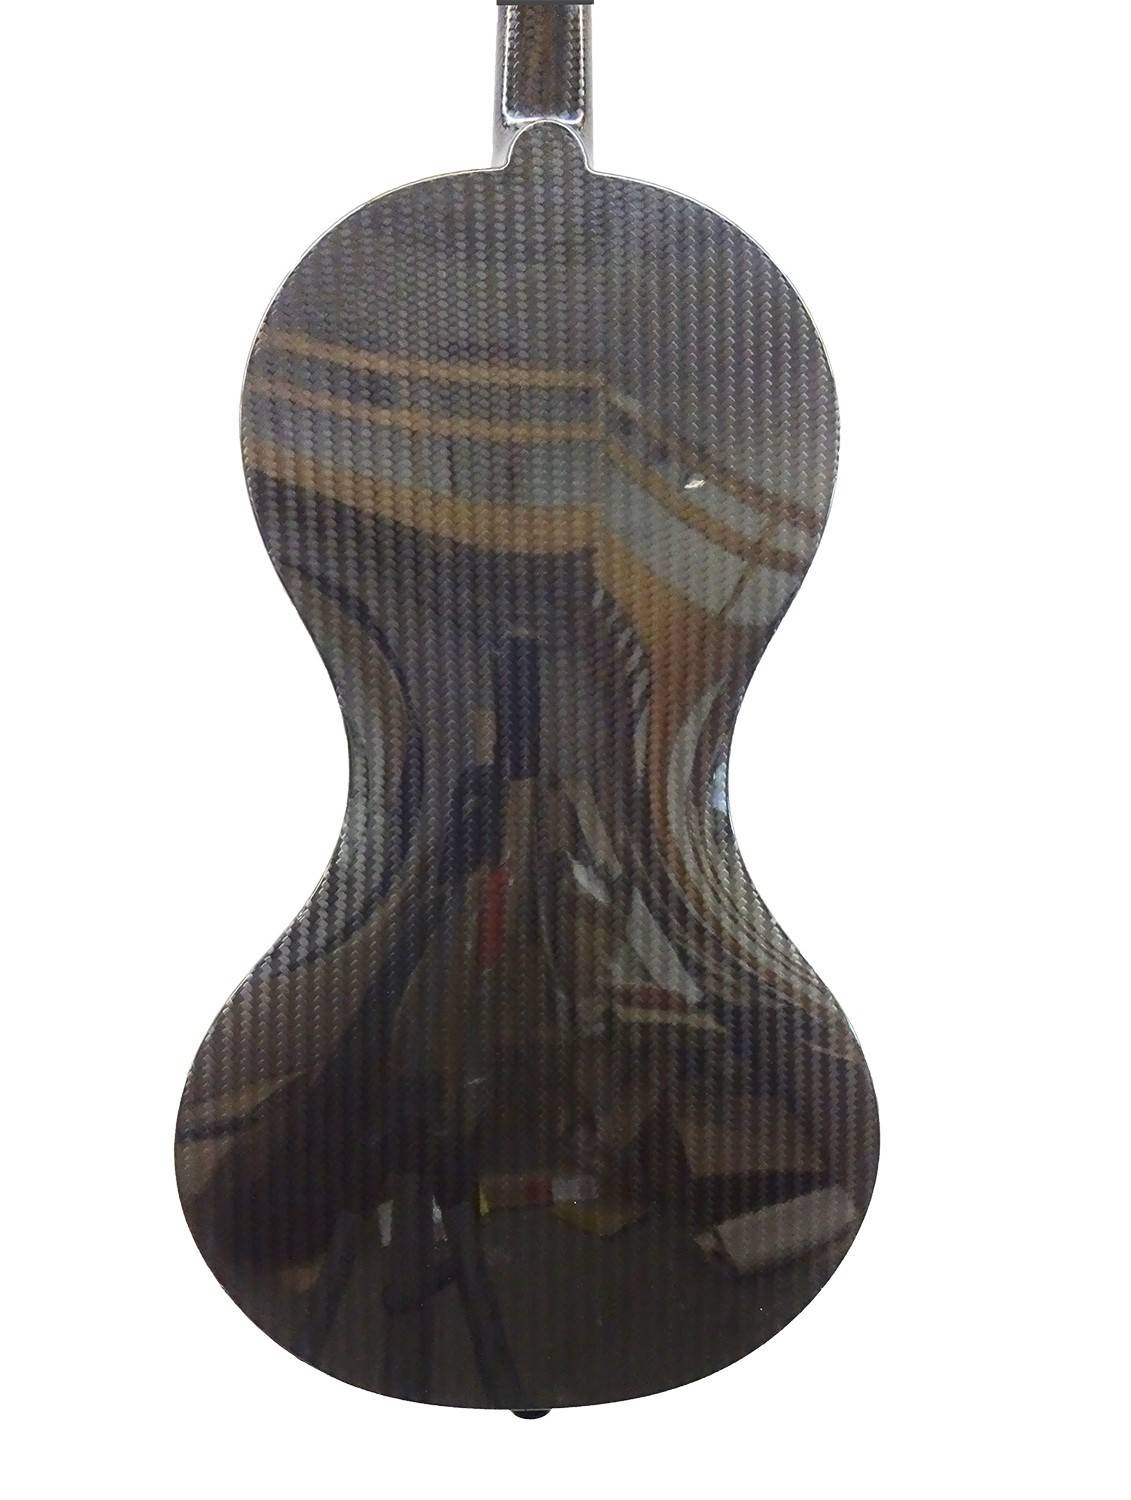 Carbon violin "Evo Line" left-handed violin